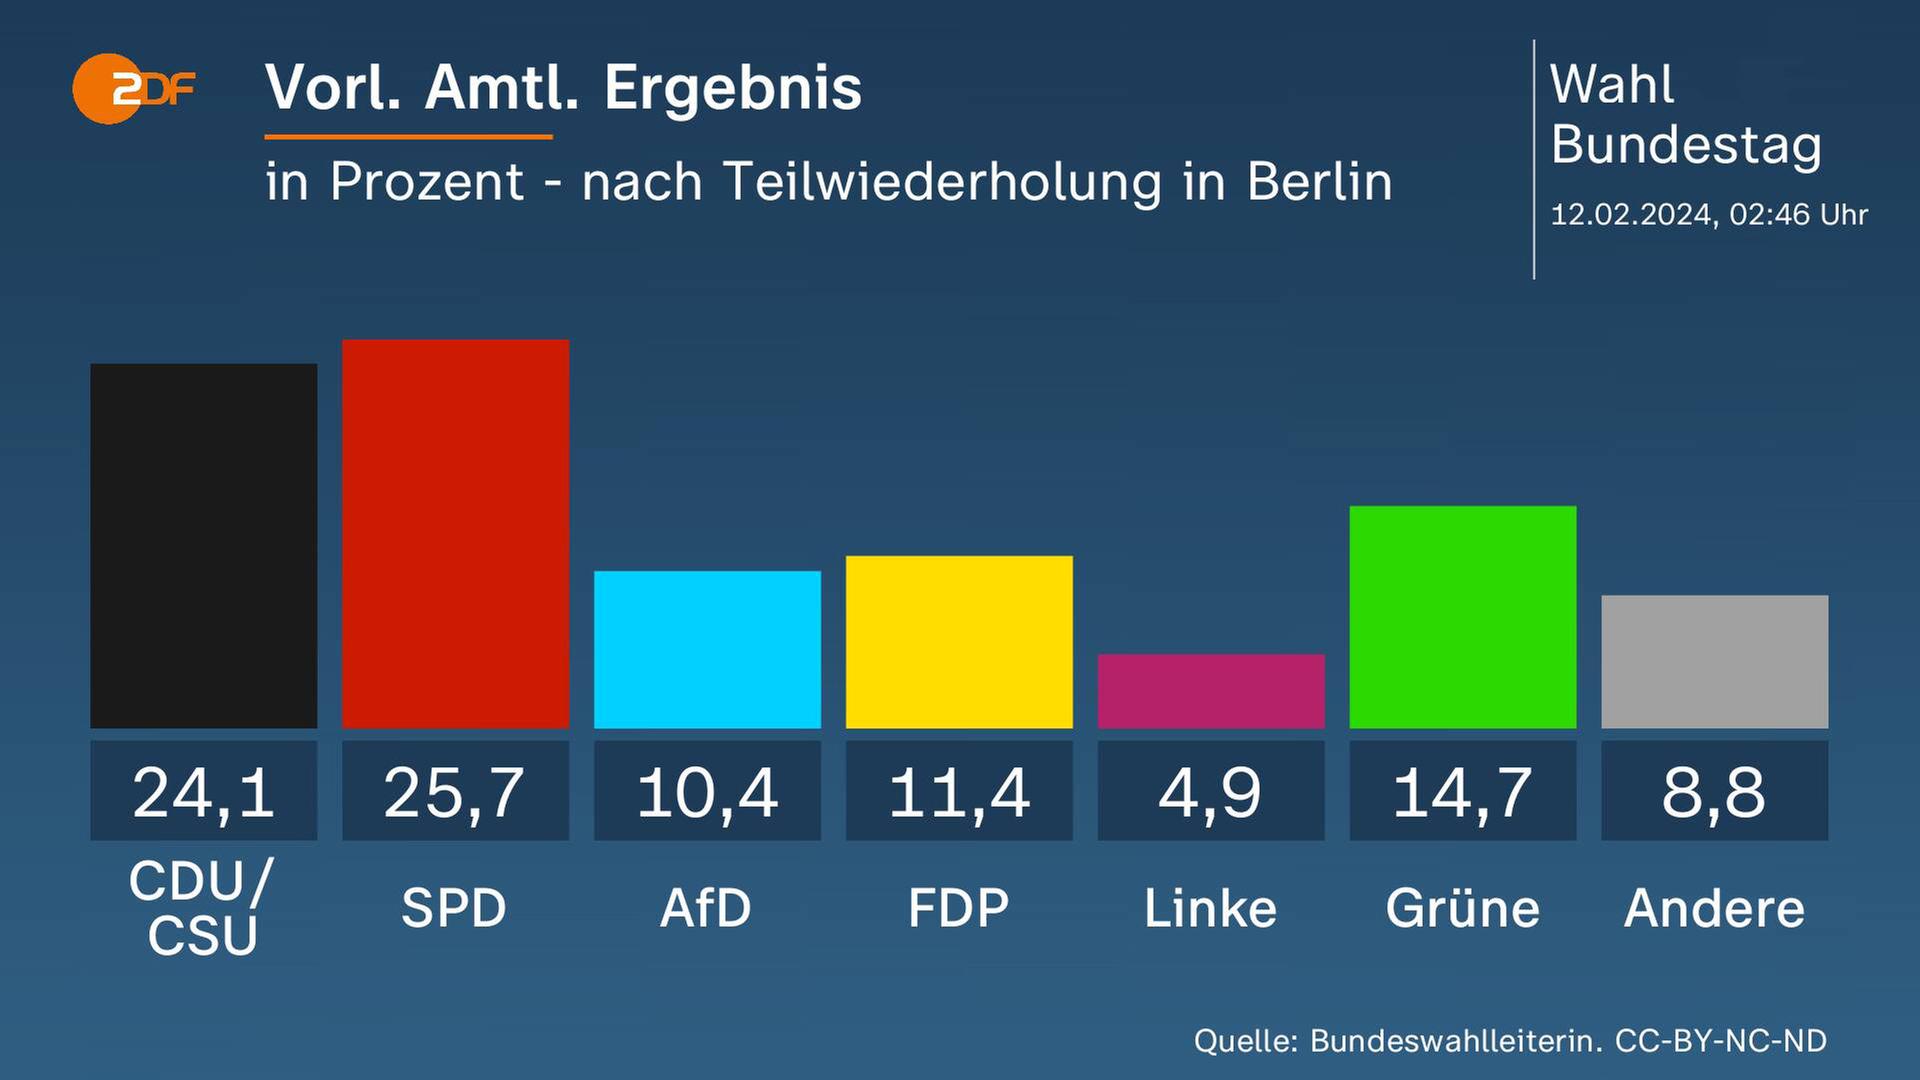 Das Gesamtergebnis der Bundestagswahl 2021 deutschlandweit - jetzt mit den neuen Stimmen aus Berlin vom 11. Februar 2024.